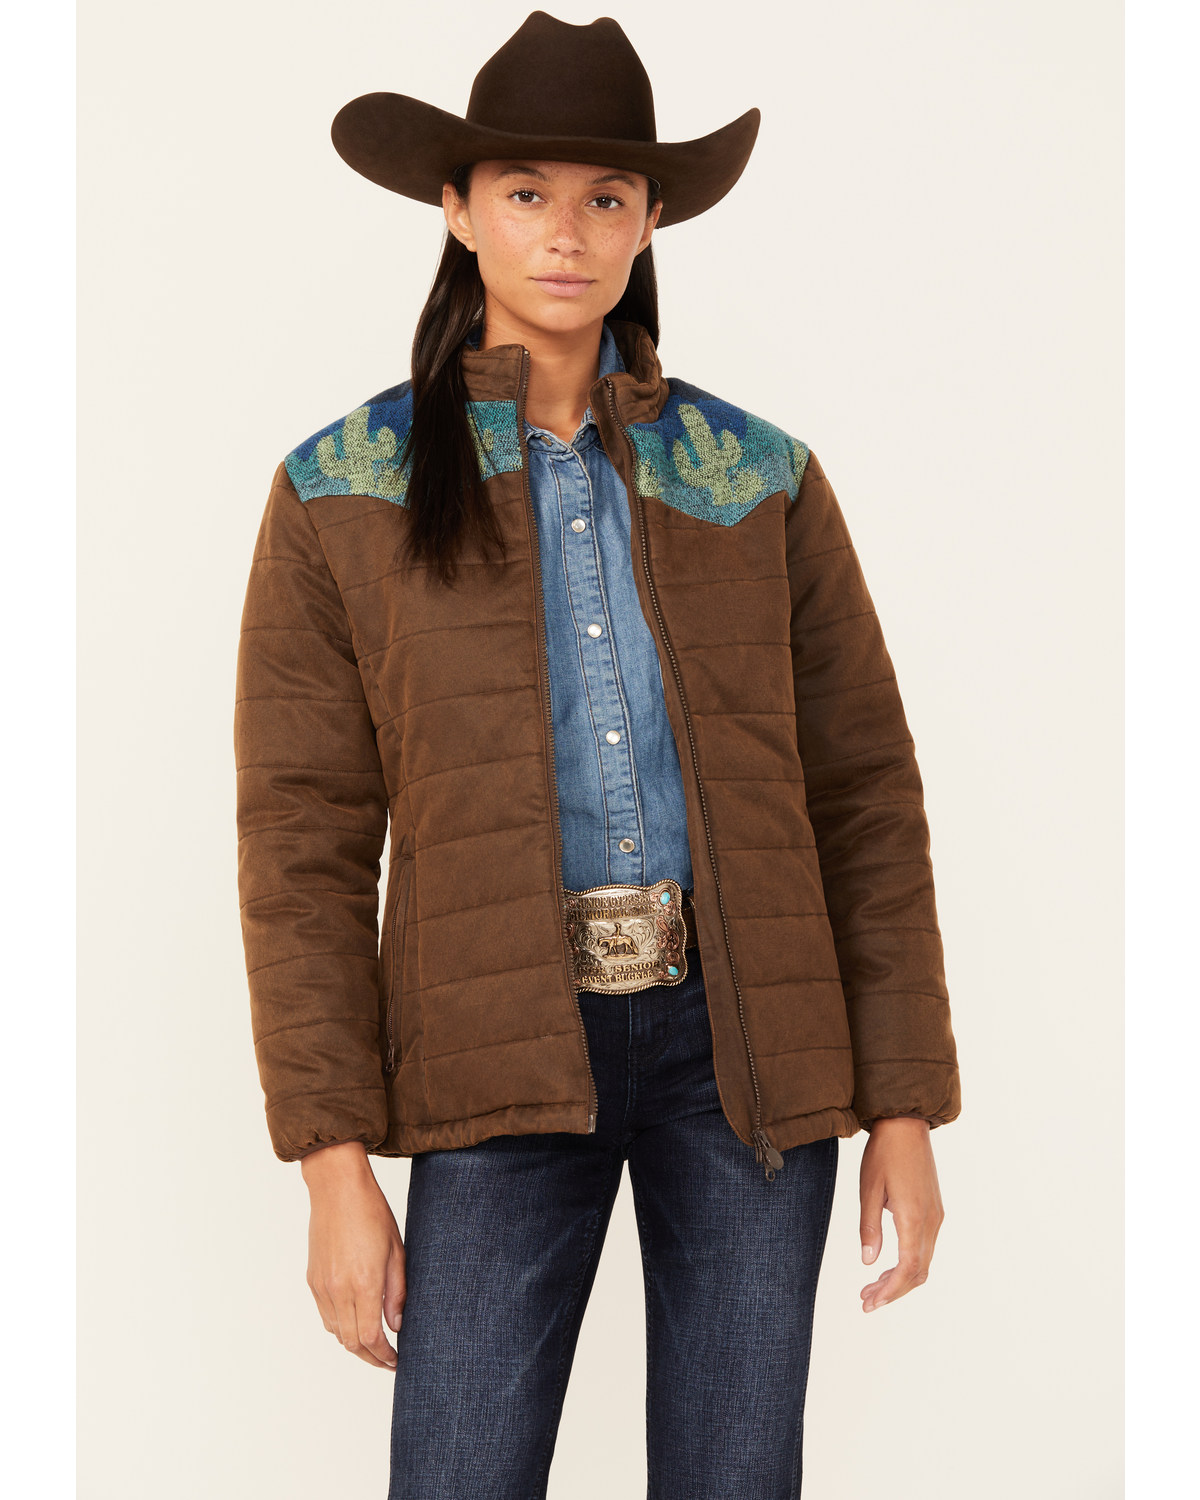 Outback Trading Co Women's Western Printed Yoke Puffer Aspen Jacket